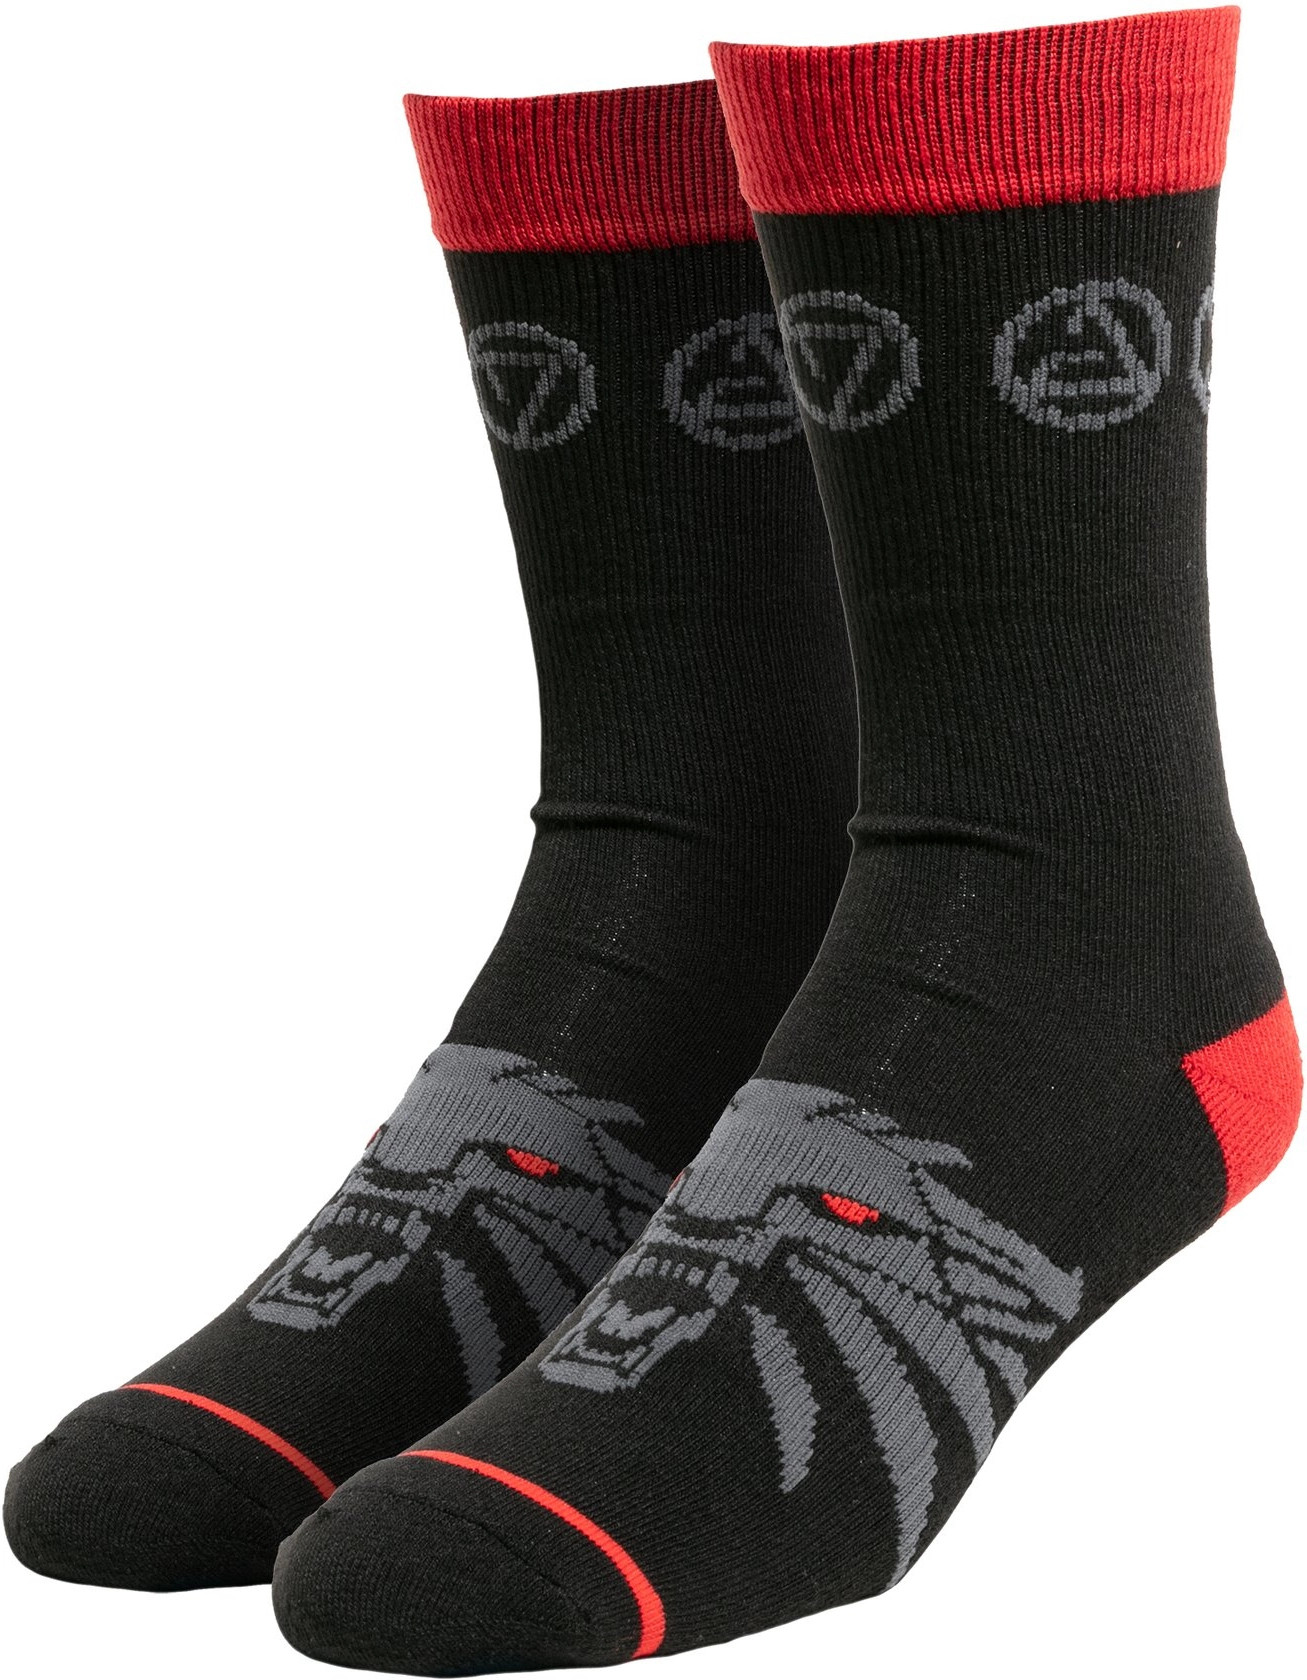 The Witcher 3 - Monster's Bane Socks